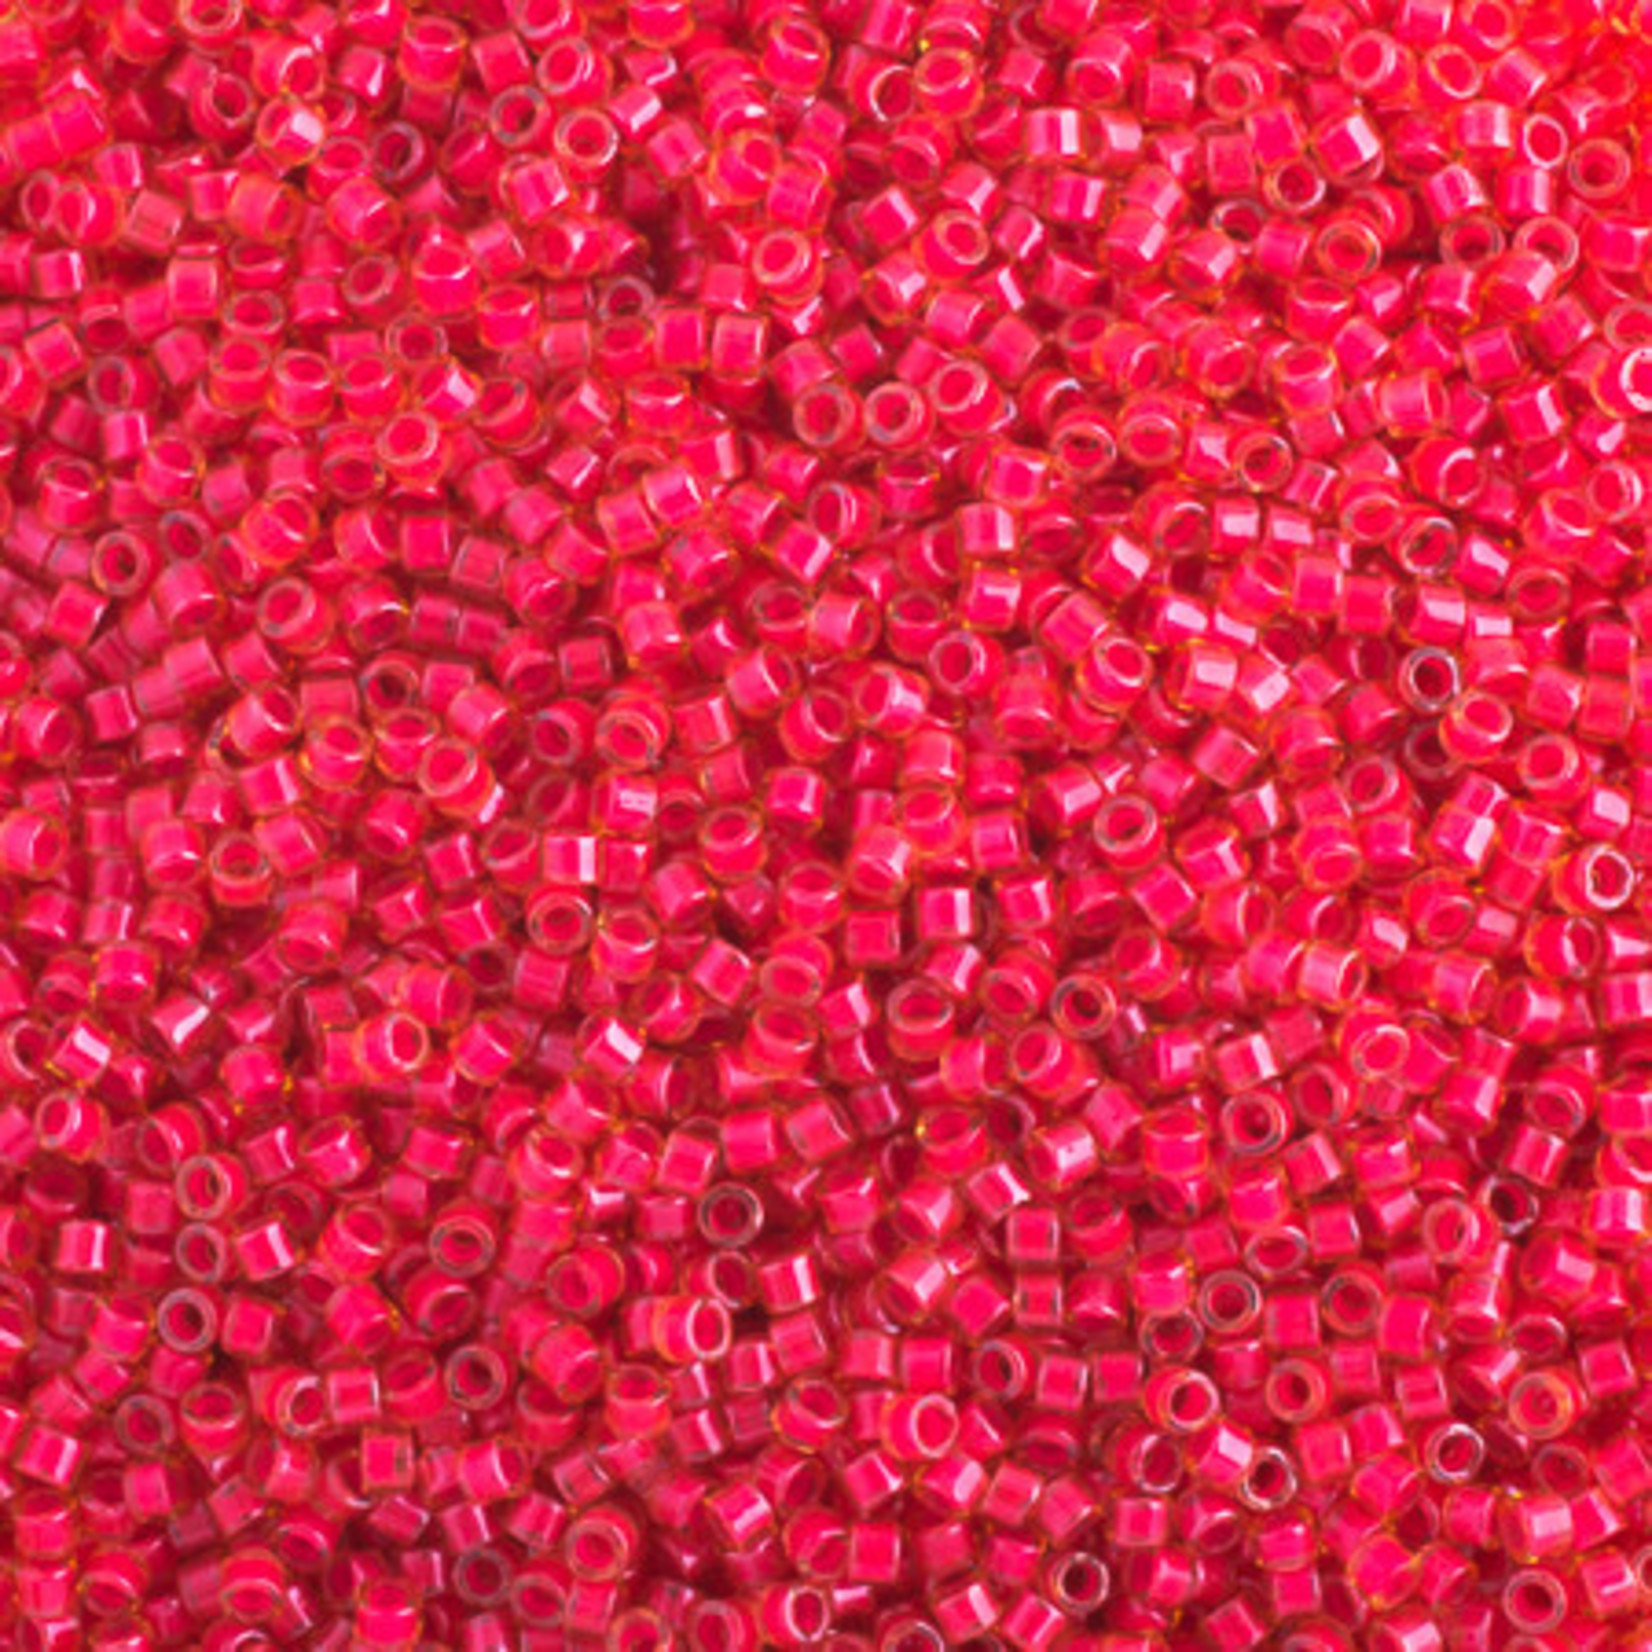 MIYUKI Delica 11-0 Luminous Poppy Red Neon 10g